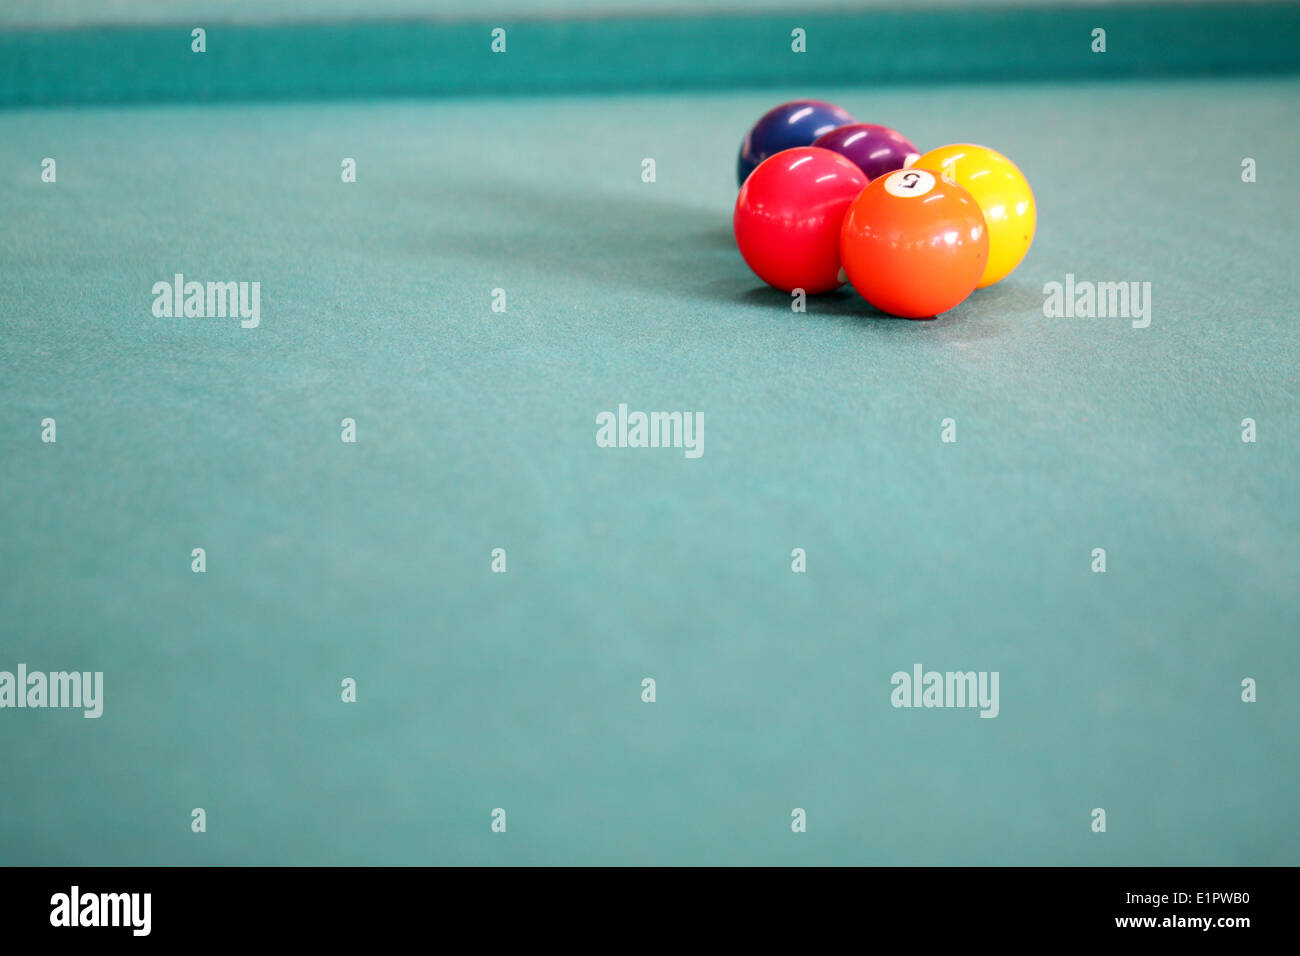 Die Farbe der Kugel auf dem Snookertisch. Stockfoto